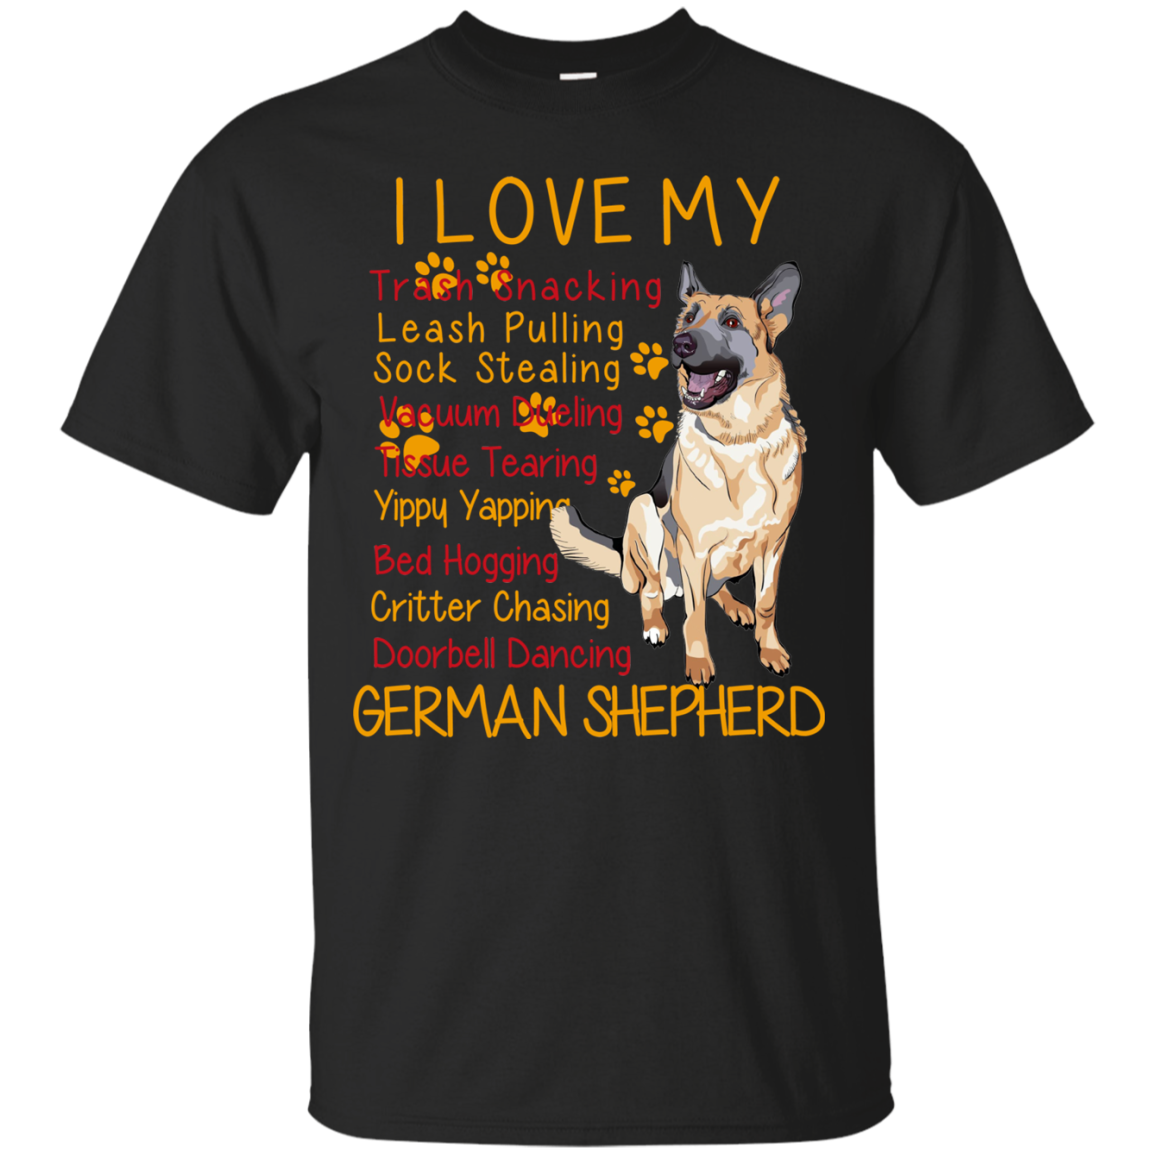 German Shepherd Shirts I Love My German Shepherd - Teesmiley